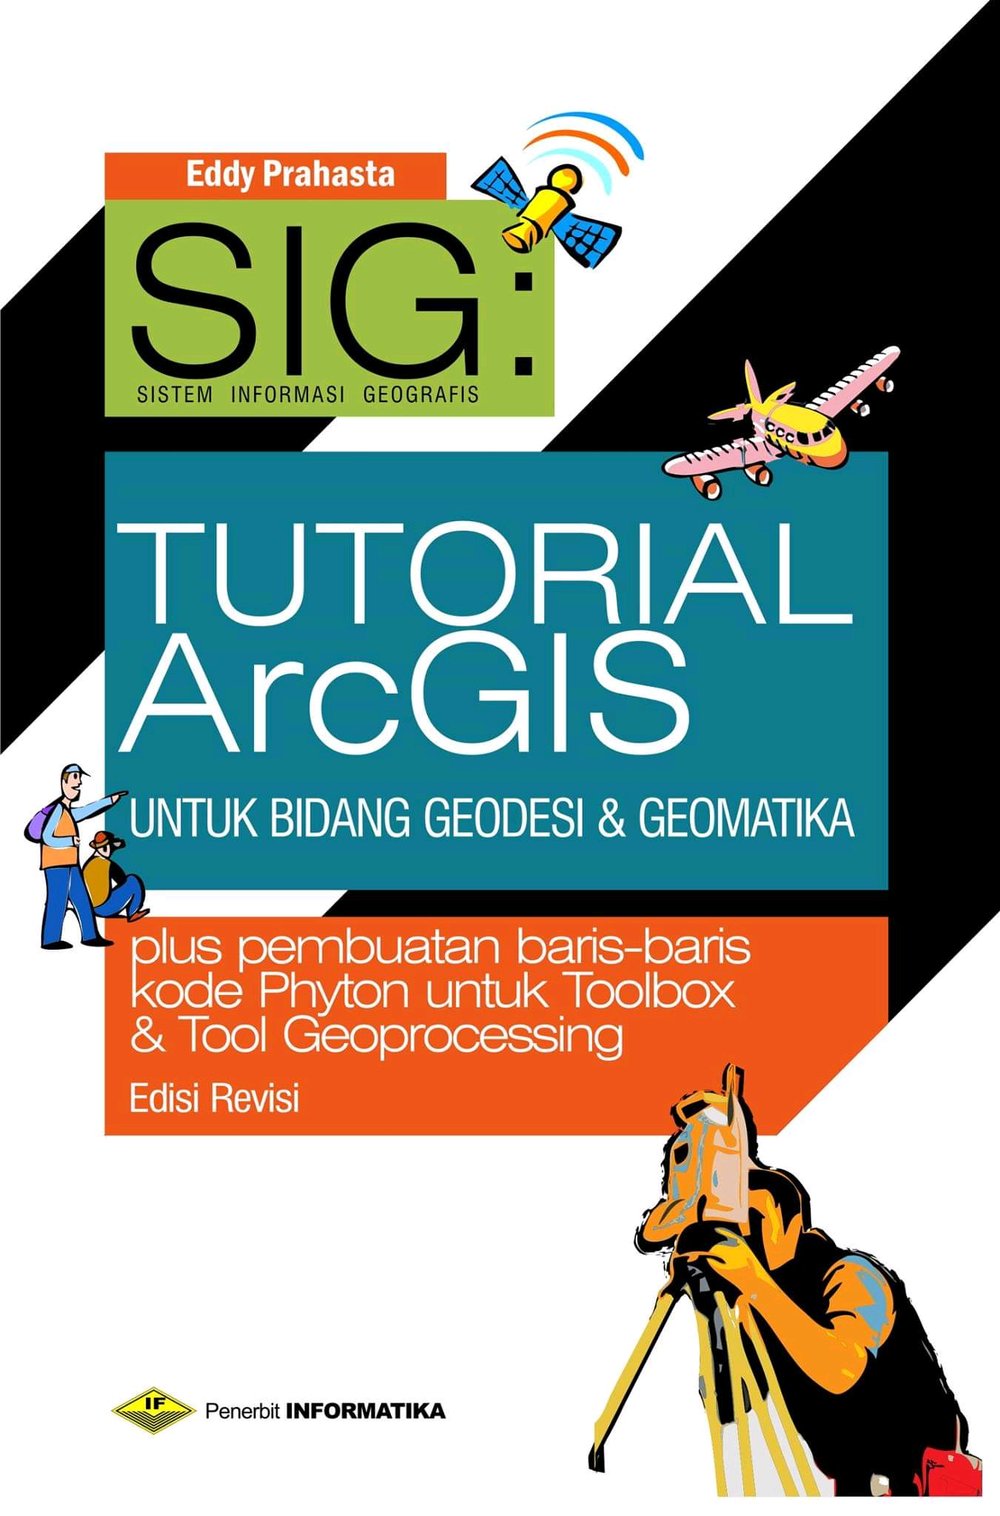 SIG: Tutorial ArcGIS Dekstop Untuk Bidang Geodesi & Geomatika (Plus Pembuatan baris-baris kode Python untuk Toolbox & Tool Geoprocessing)